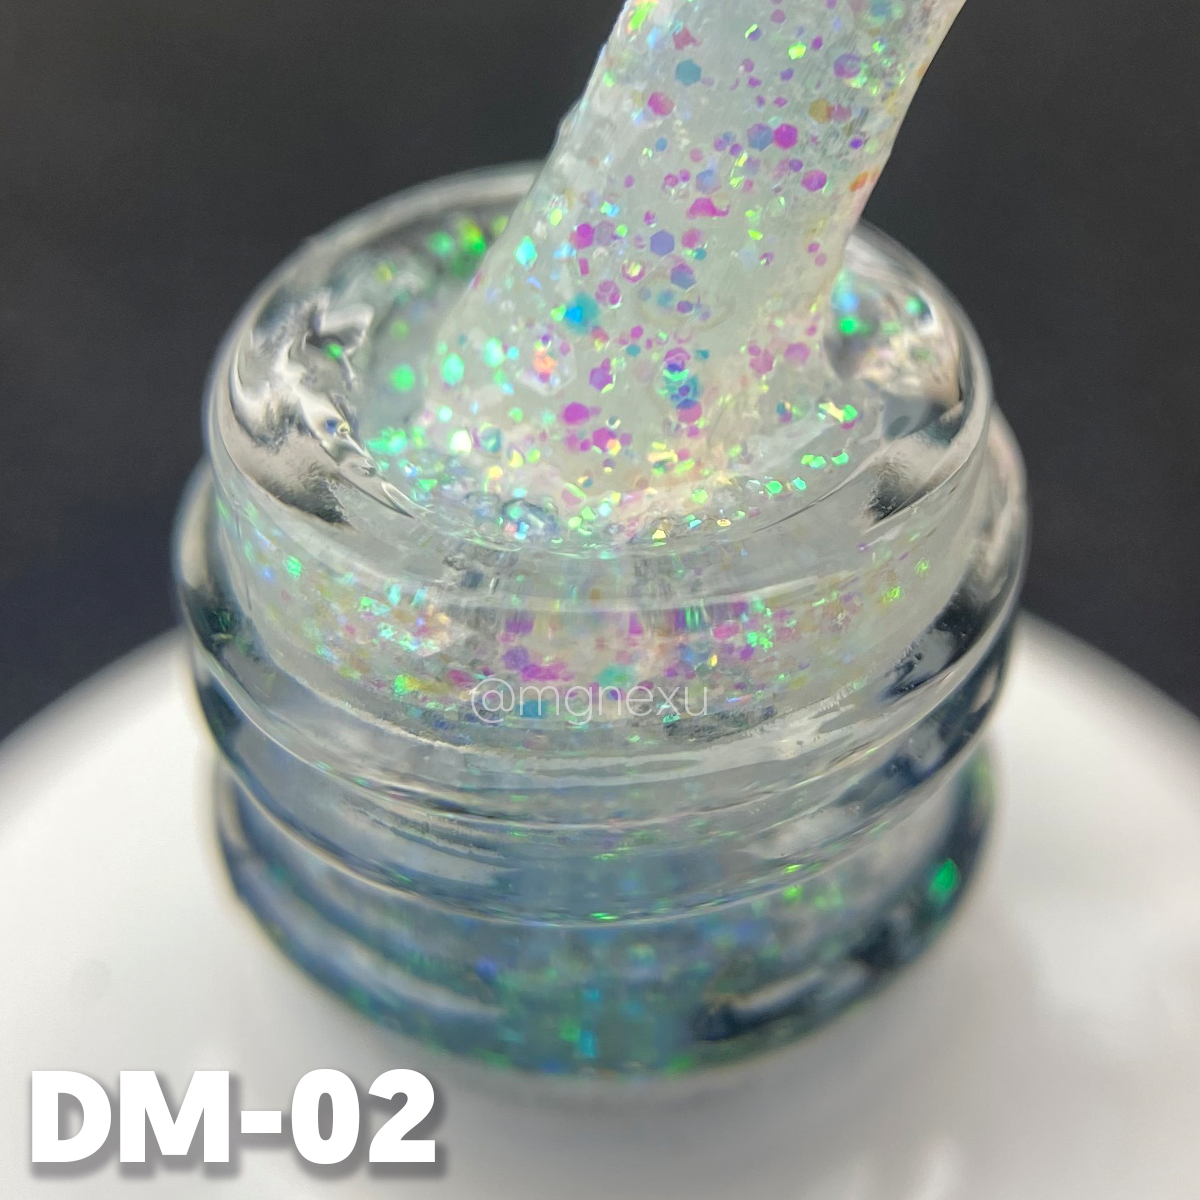 DM-02